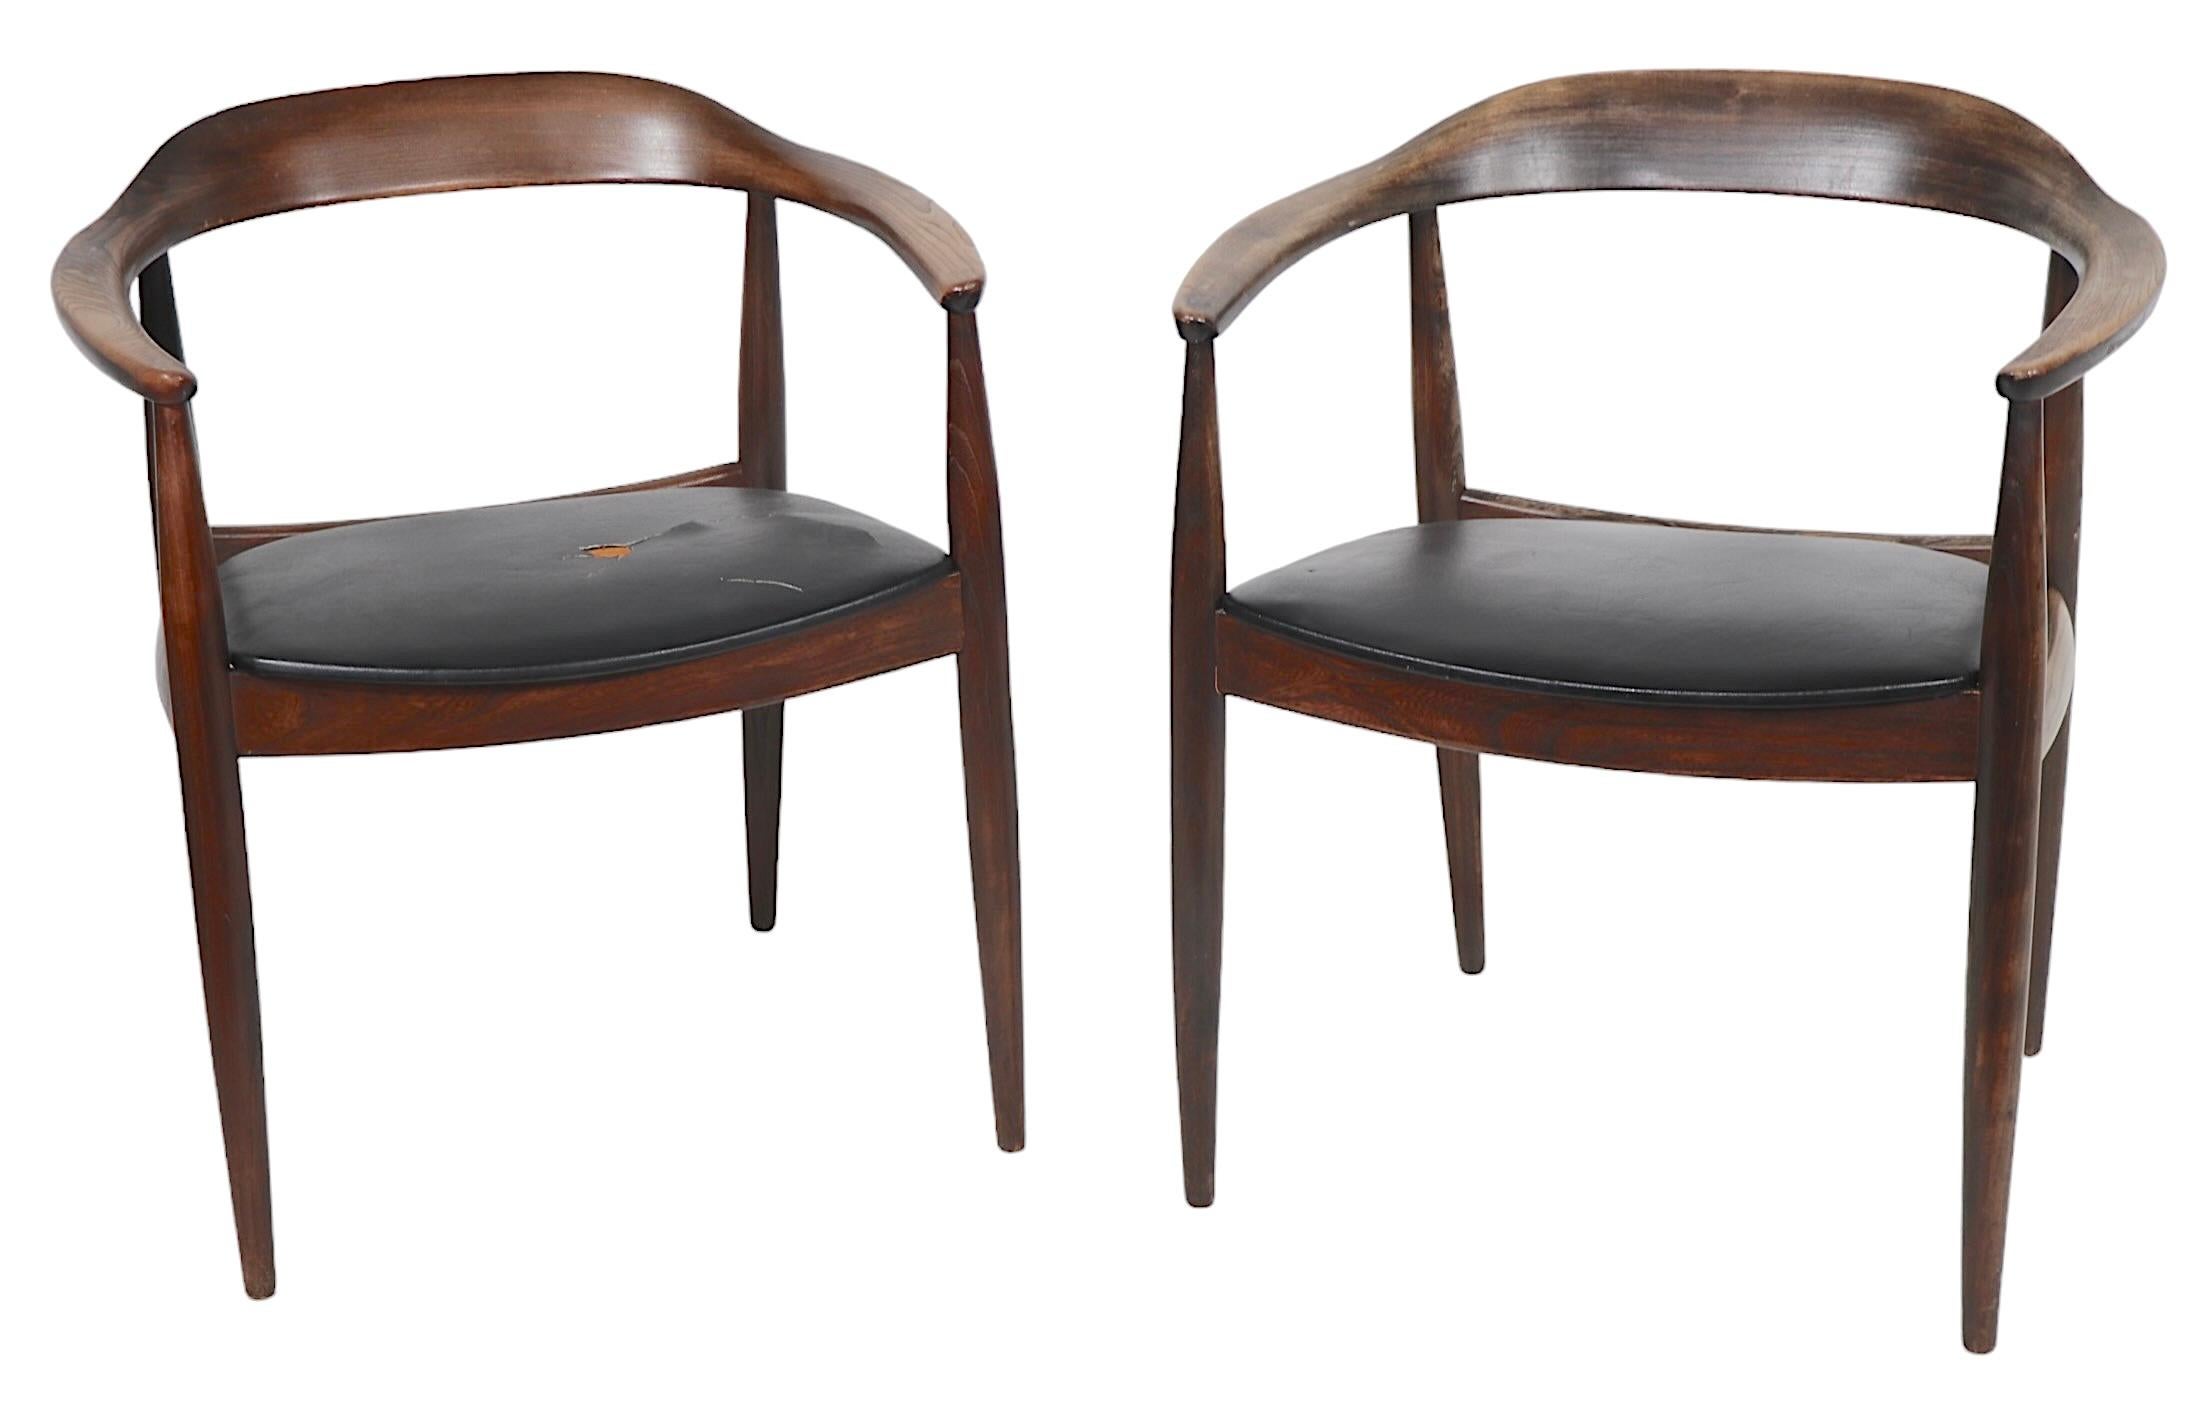 Ein Paar dänische Mid Century Modern Arm- oder Esszimmerstühle, entworfen von Illum Wikkelso, Möbel von Niels Eilersen, hergestellt in Dänemark um 1950. Diese klassischen Stühle sind aus Massivholz, ich glaube aus Teakholz, und mit Vinylsitzen